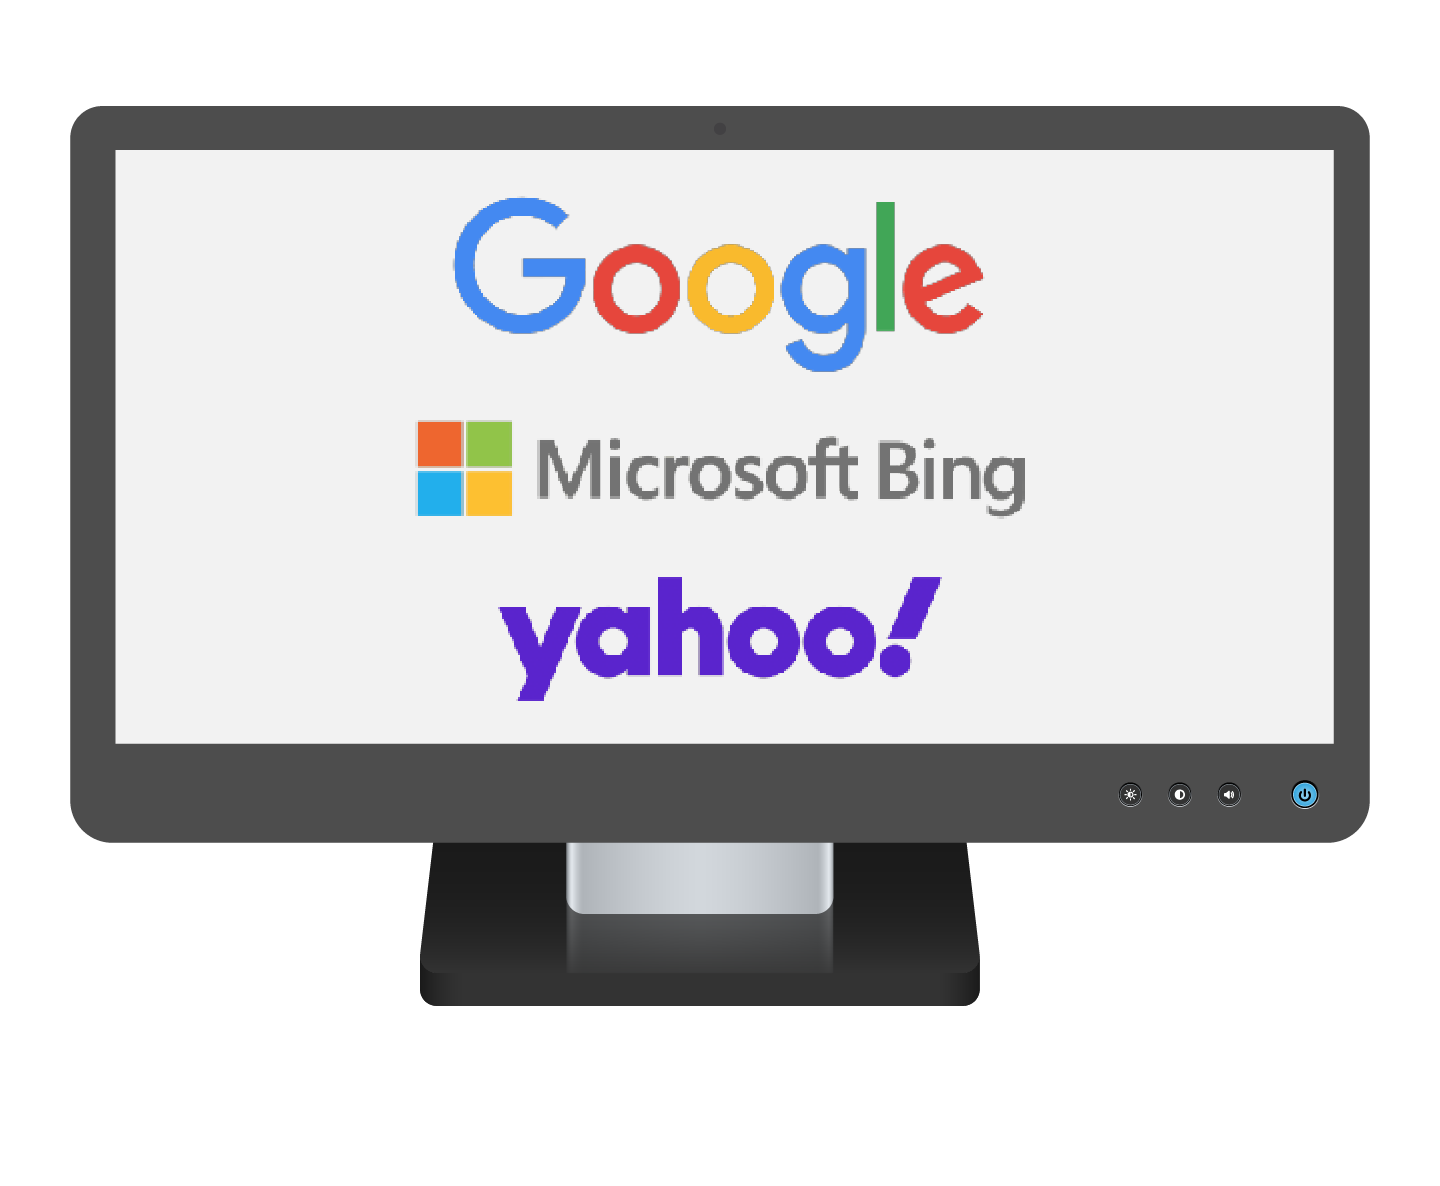 جهاز كمبيوتر يعرض شعارات Google و Microsoft Bing و Yahoo!